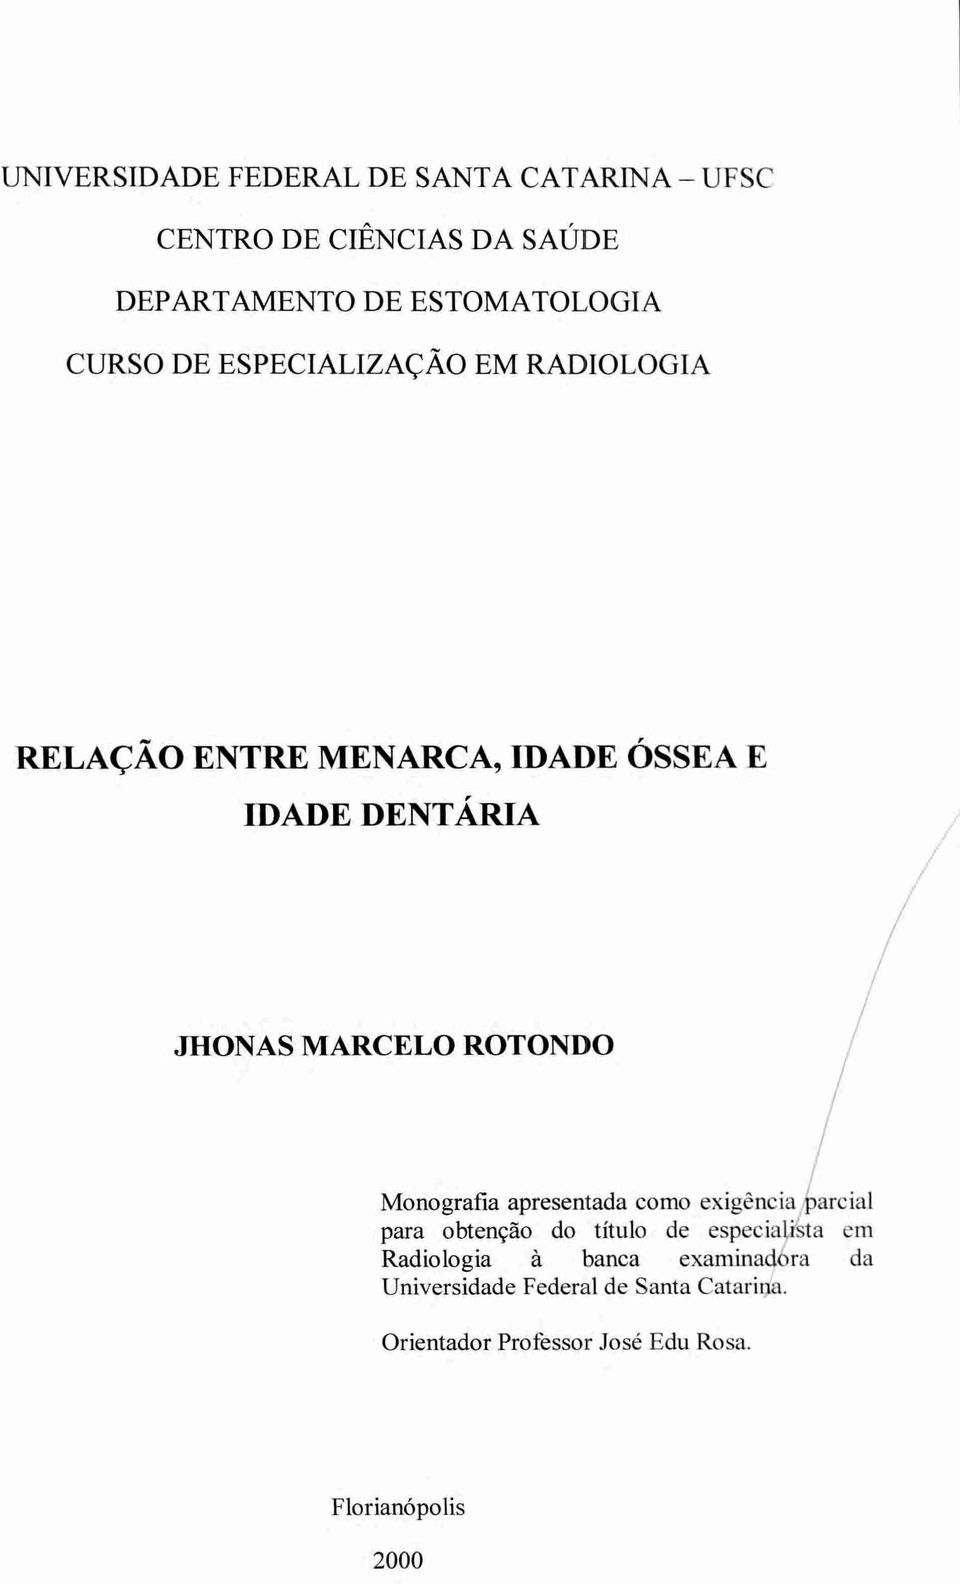 ROTONDO Monografia apresentada como exigência sarcial para obtenção do titulo de especia sta em Radiologia à